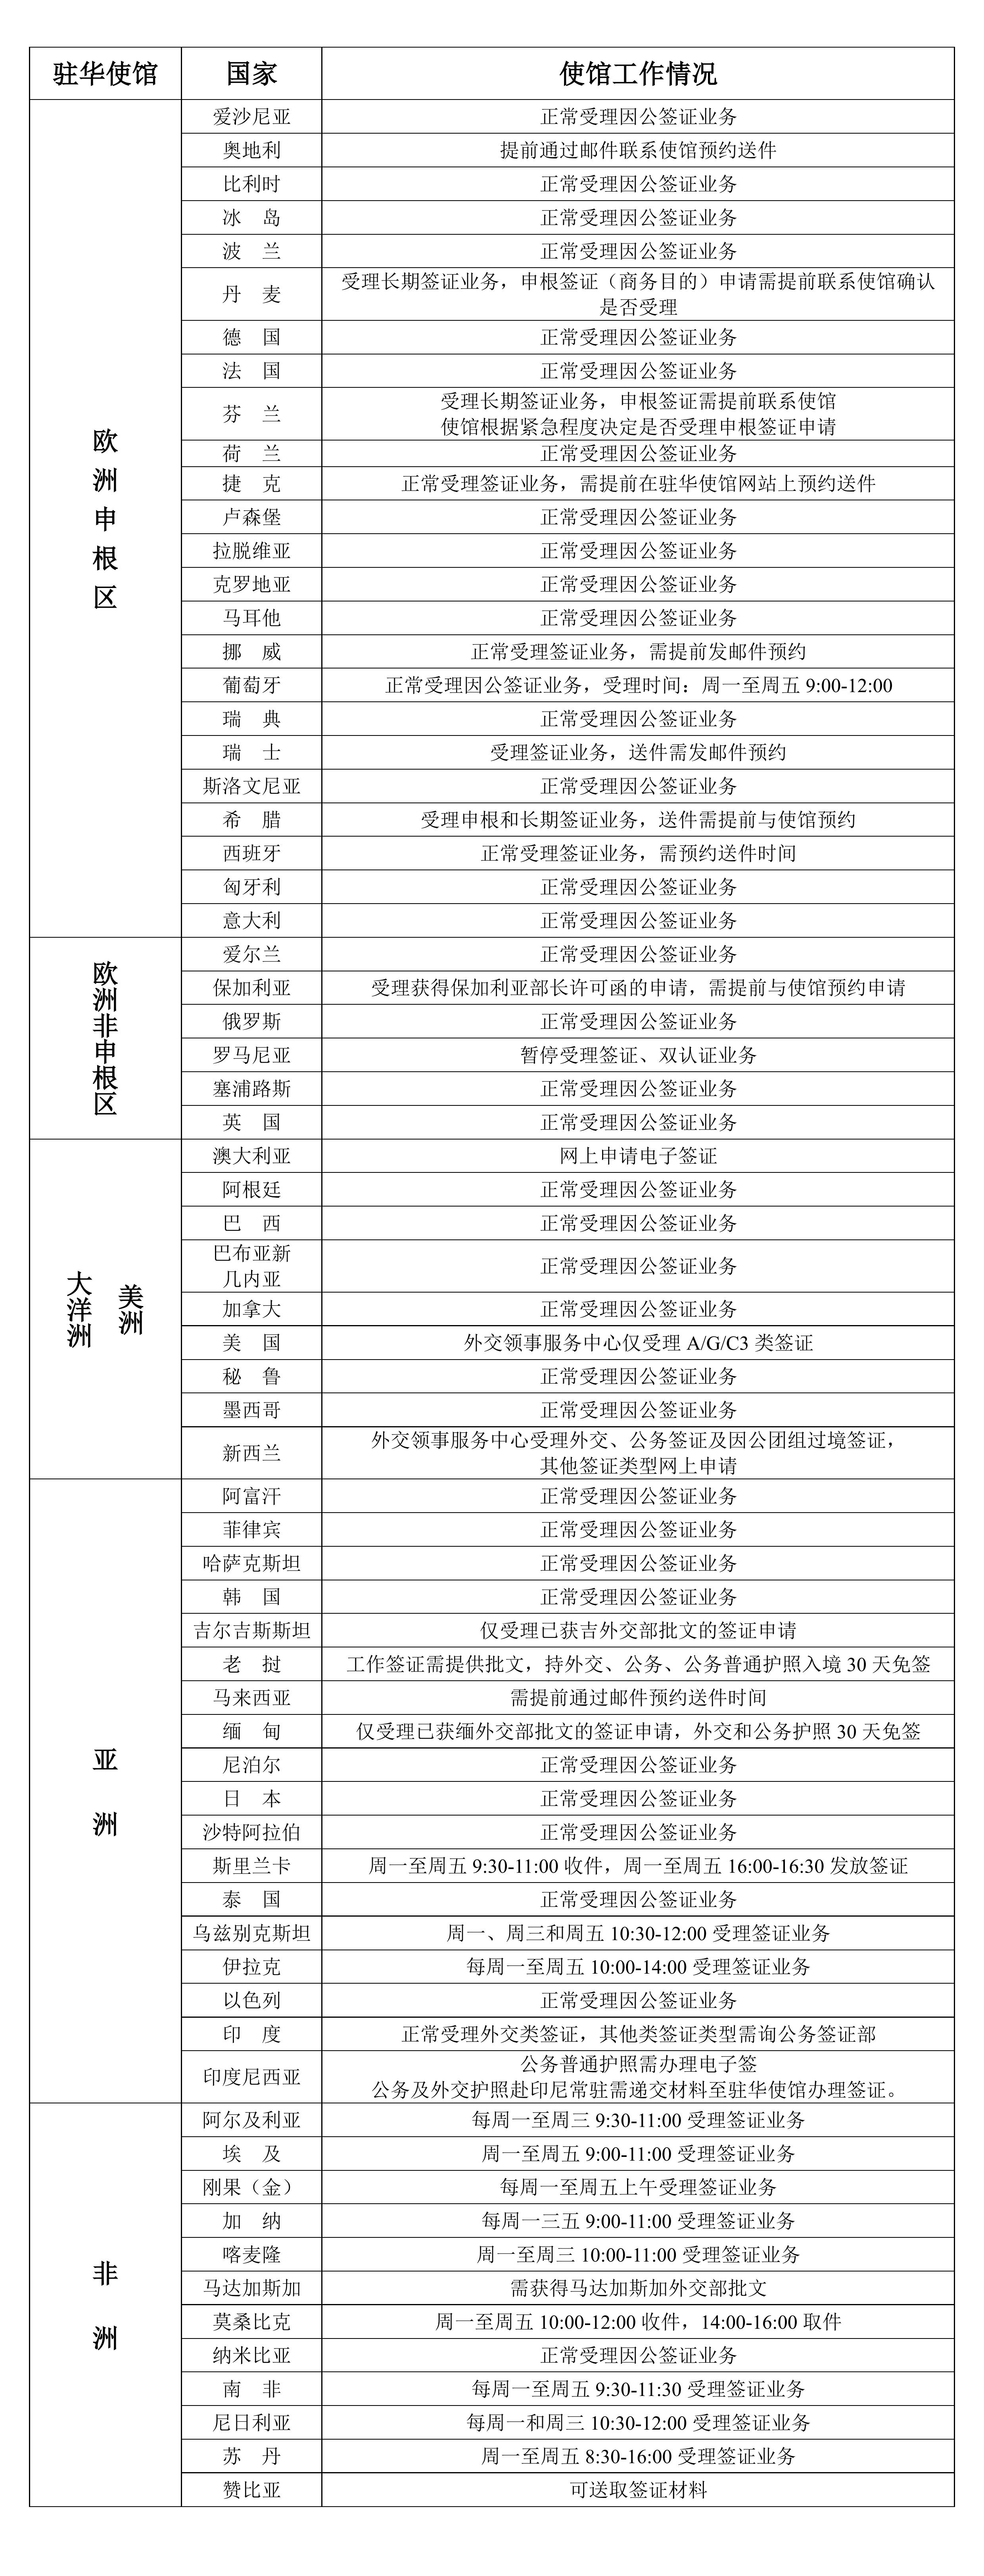 2023年2月13日部分驻华使馆工作情况统计表_00.jpg